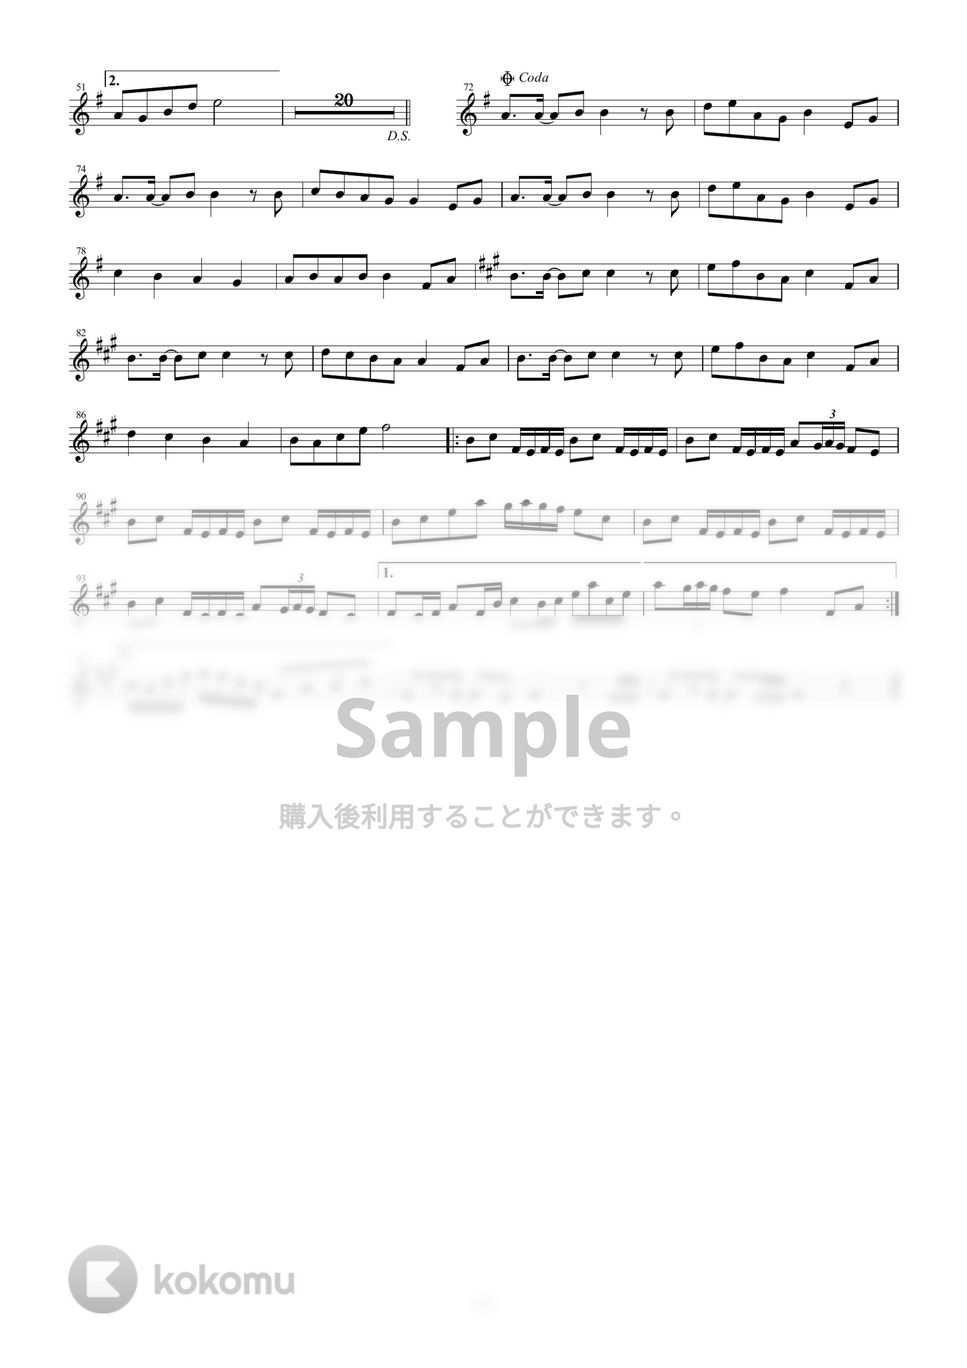 黒うさP - 千本桜 (in B♭) by y.shiori